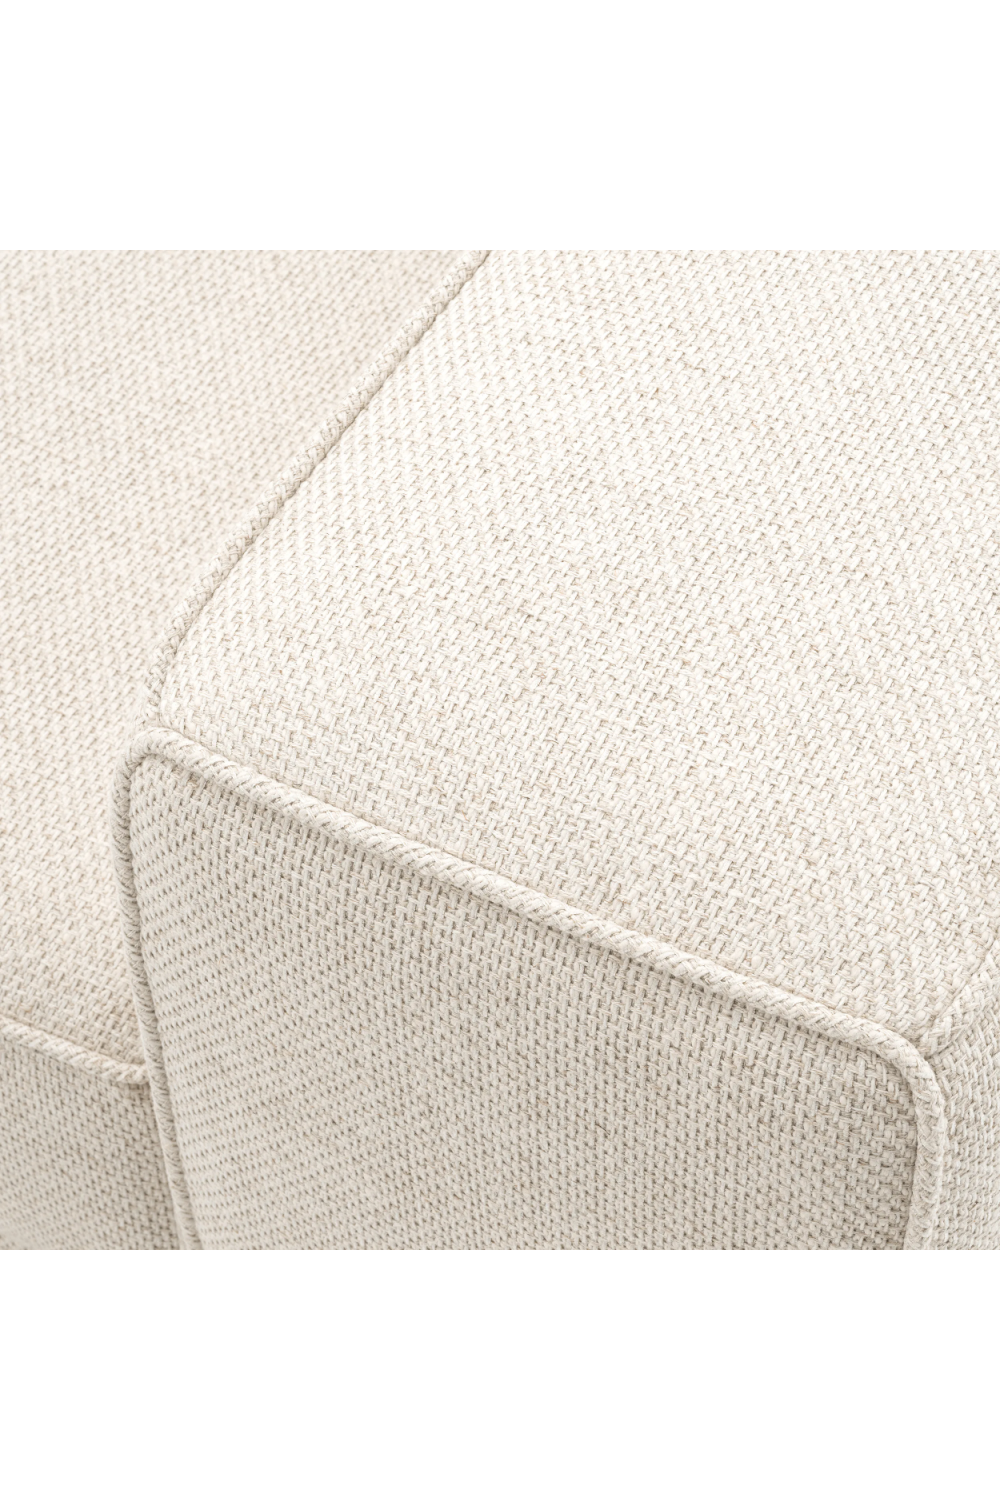 Cream Angular Modern Sofa | Eichholtz Grasso | Oroa.com